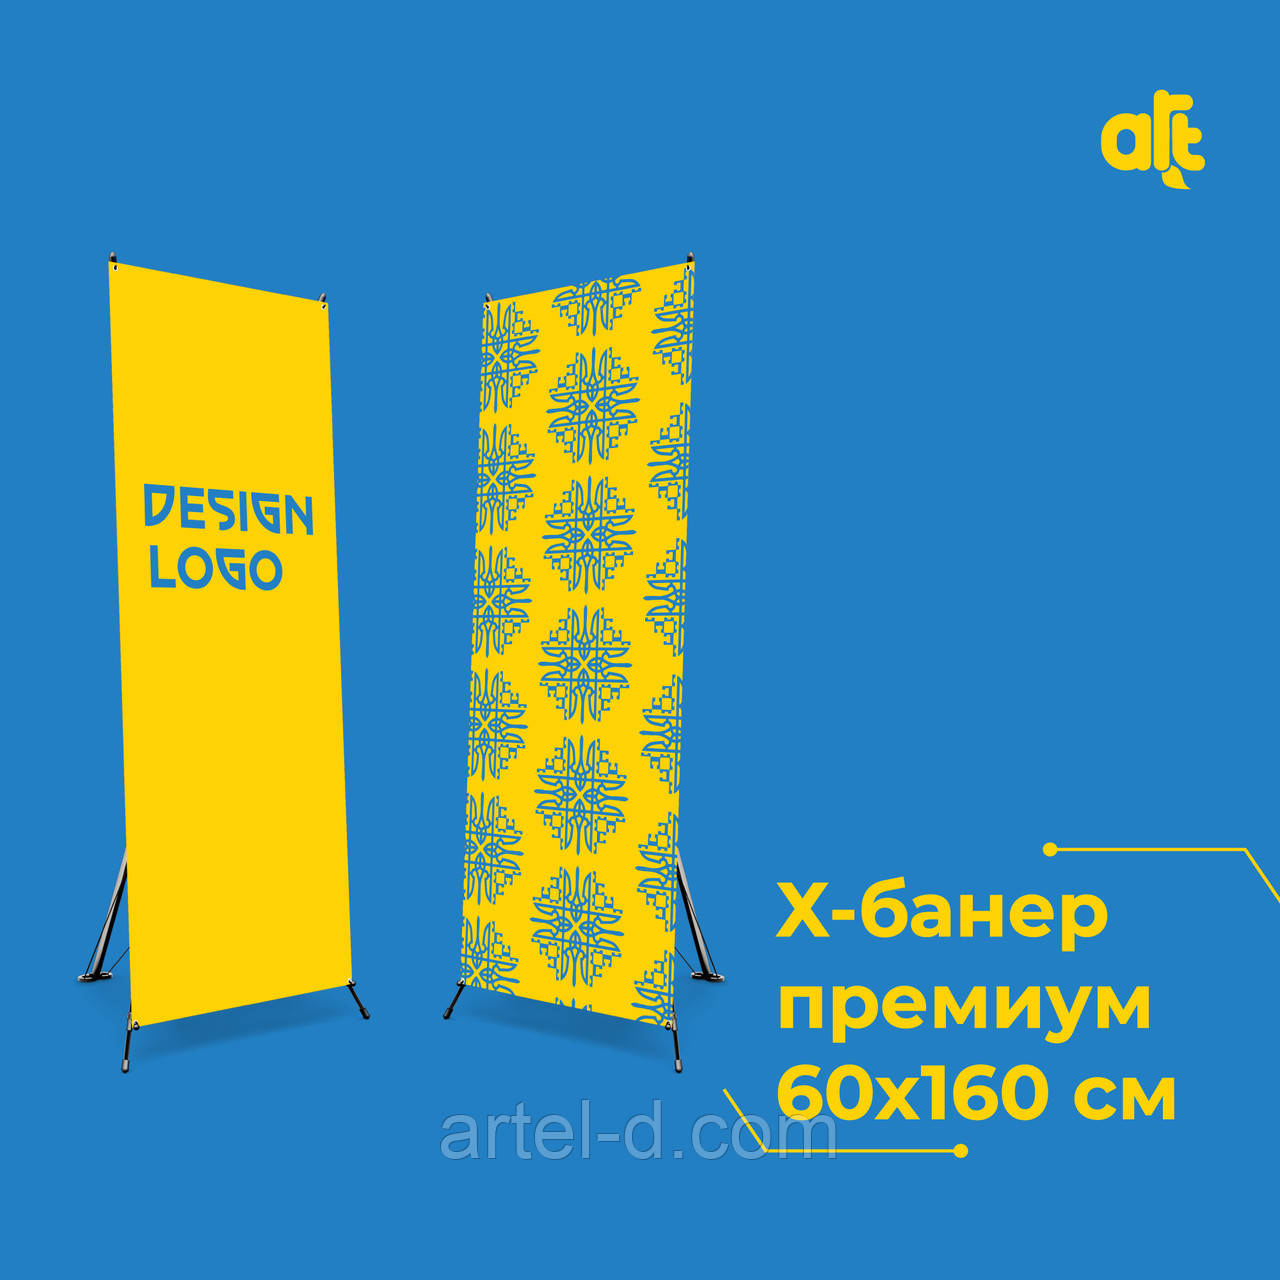 Надійний X-баннер "Преміум" 60x160 см